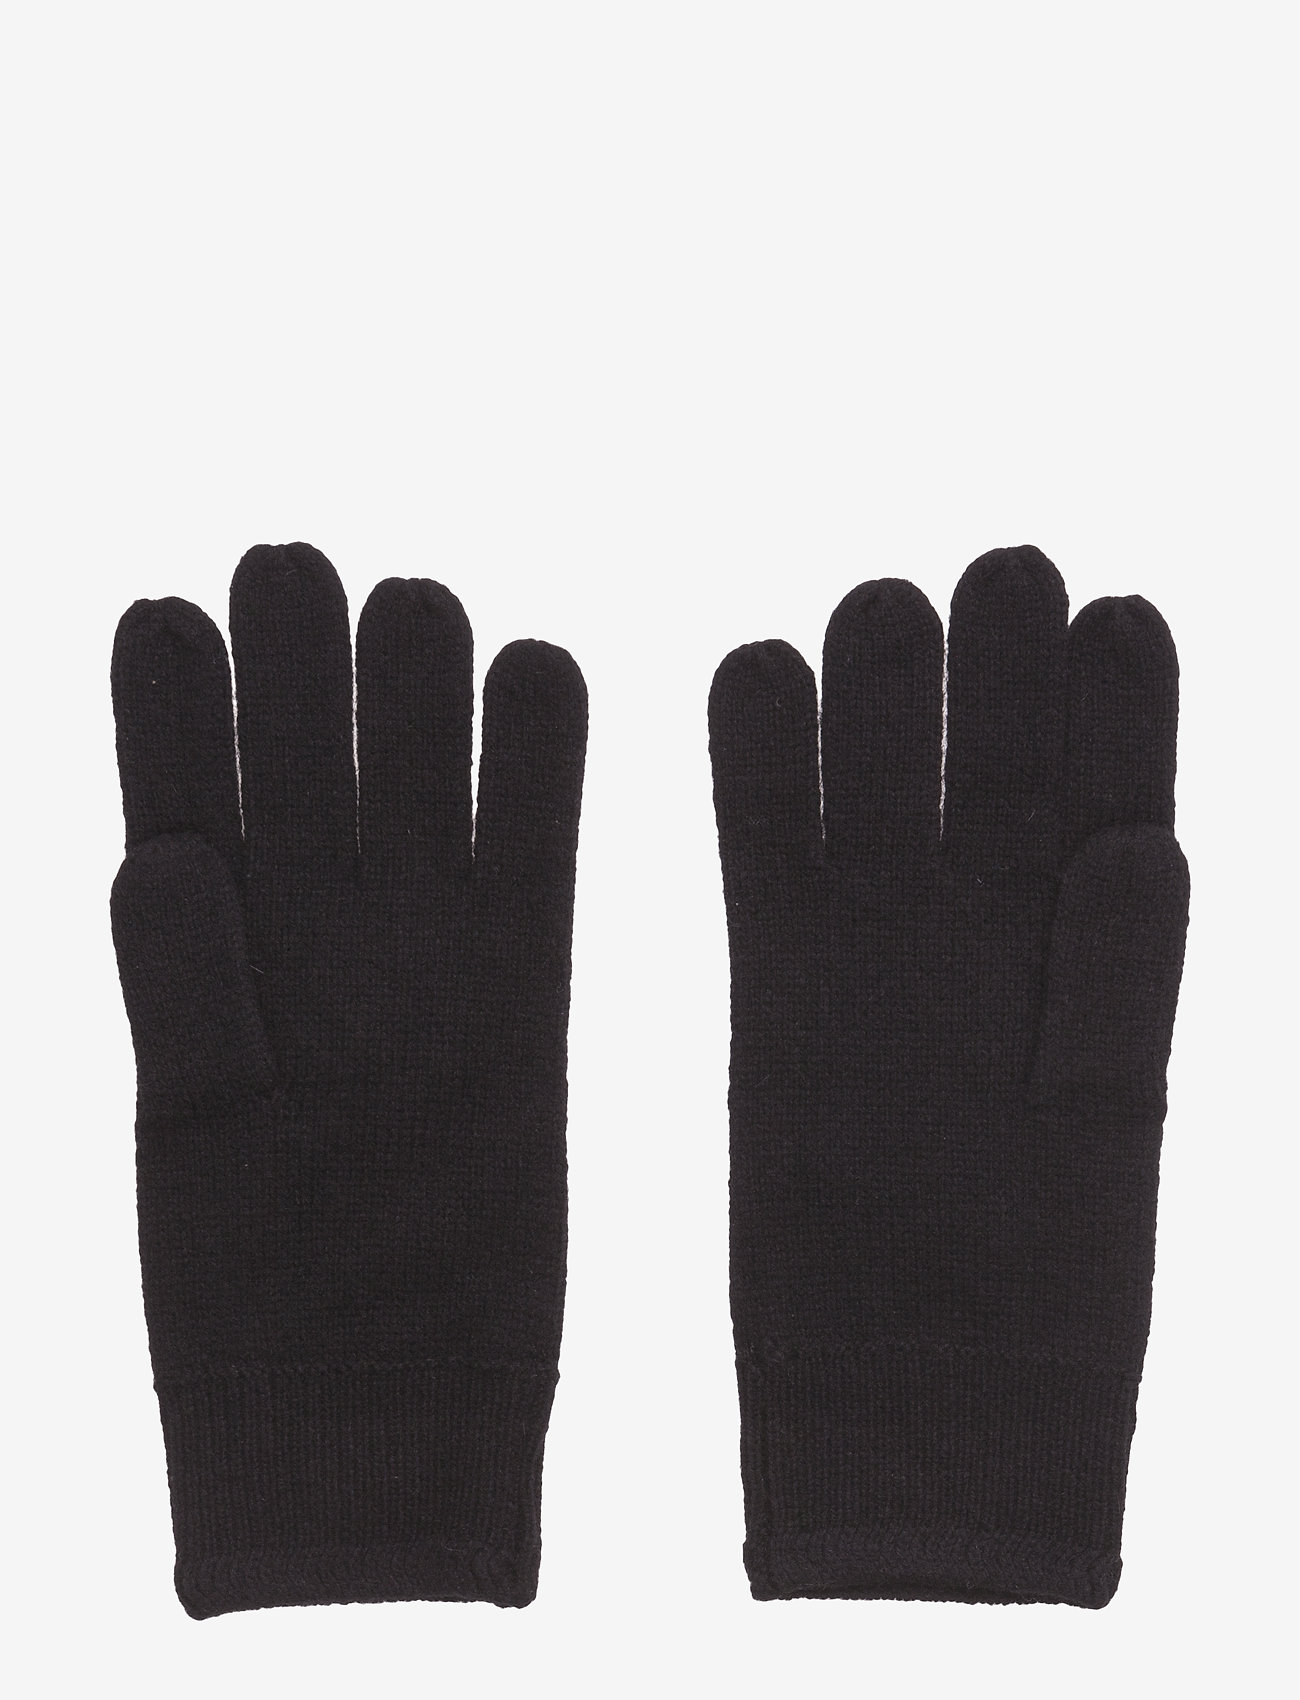 Lyle & Scott - Racked rib gloves - laveste priser - true black - 1